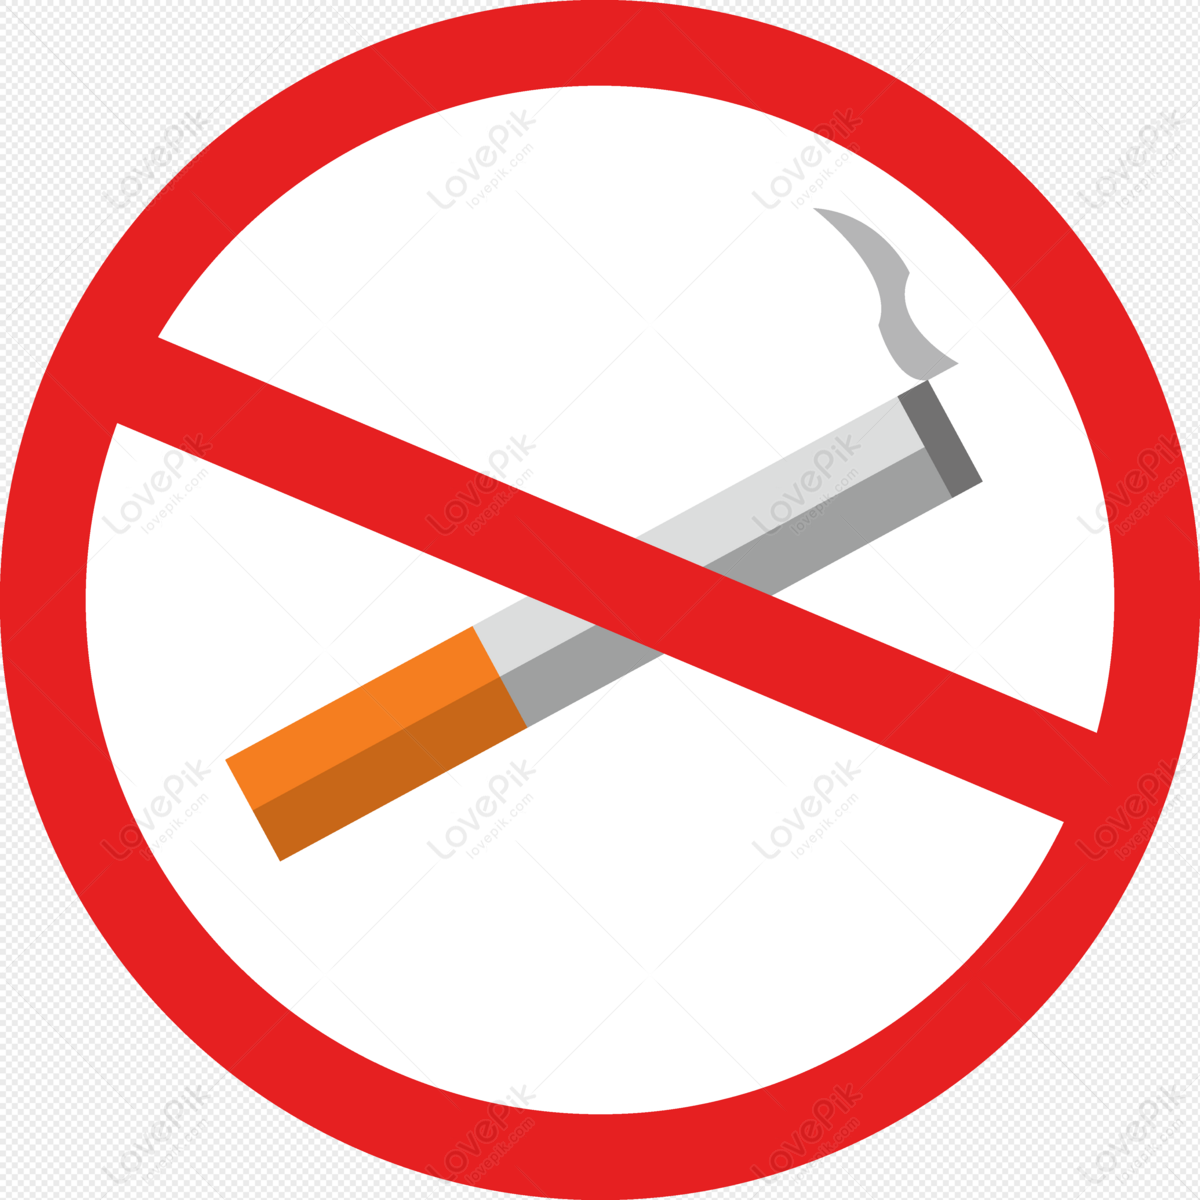 No Smoking Png Images Free Download - No Smoking Logo Png Hd,No Smoking Png  - free transparent png images - pngaaa.com